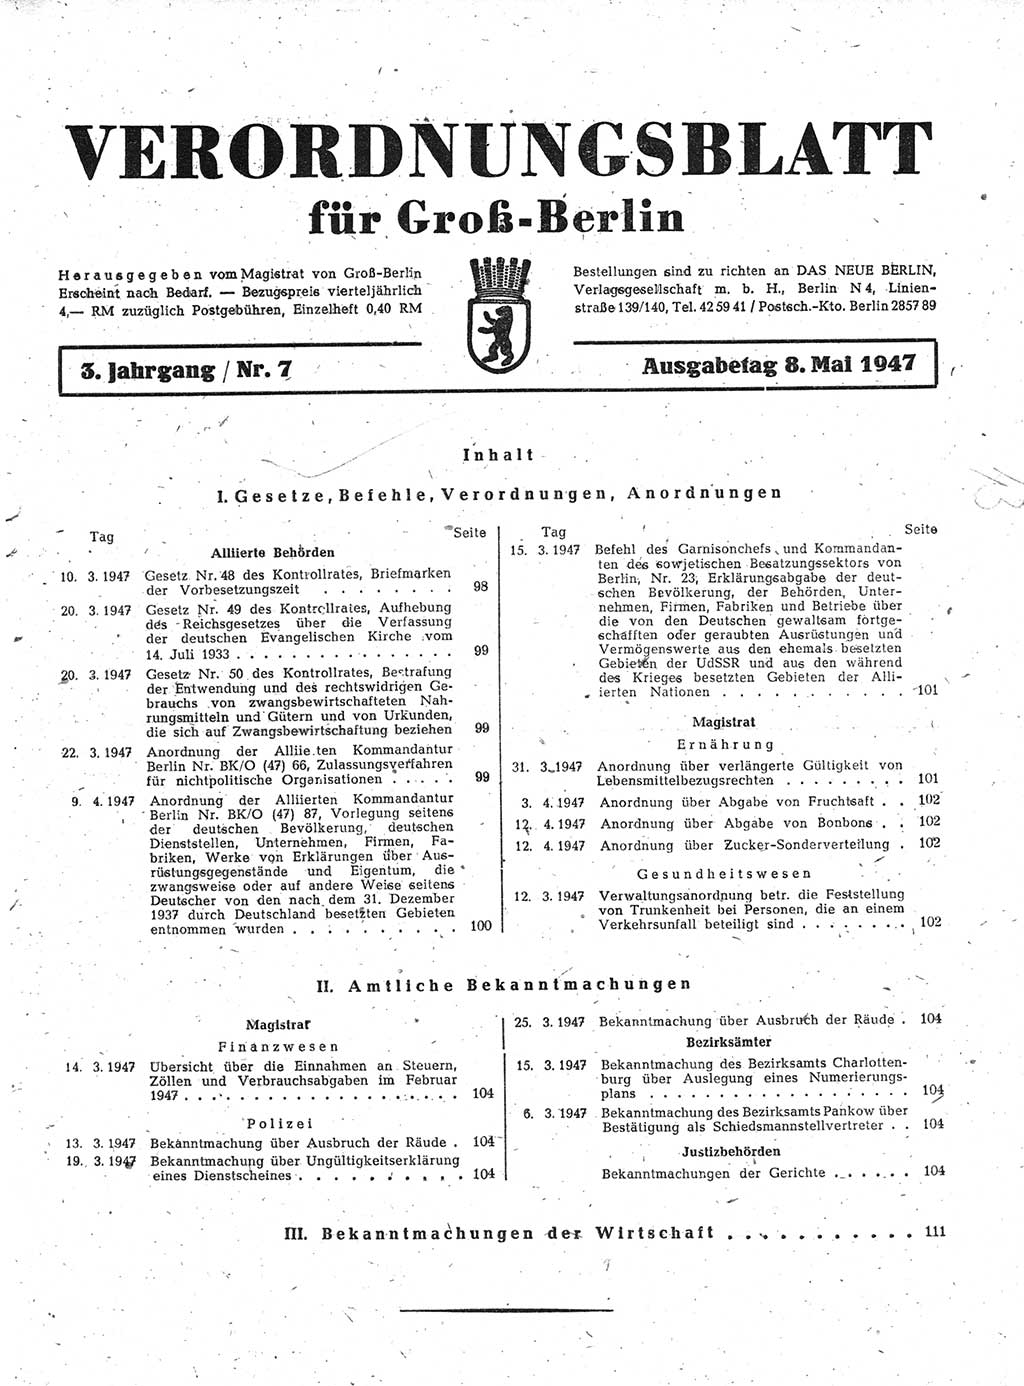 Verordnungsblatt (VOBl.) für Groß-Berlin 1947, Seite 97 (VOBl. Bln. 1947, S. 97)